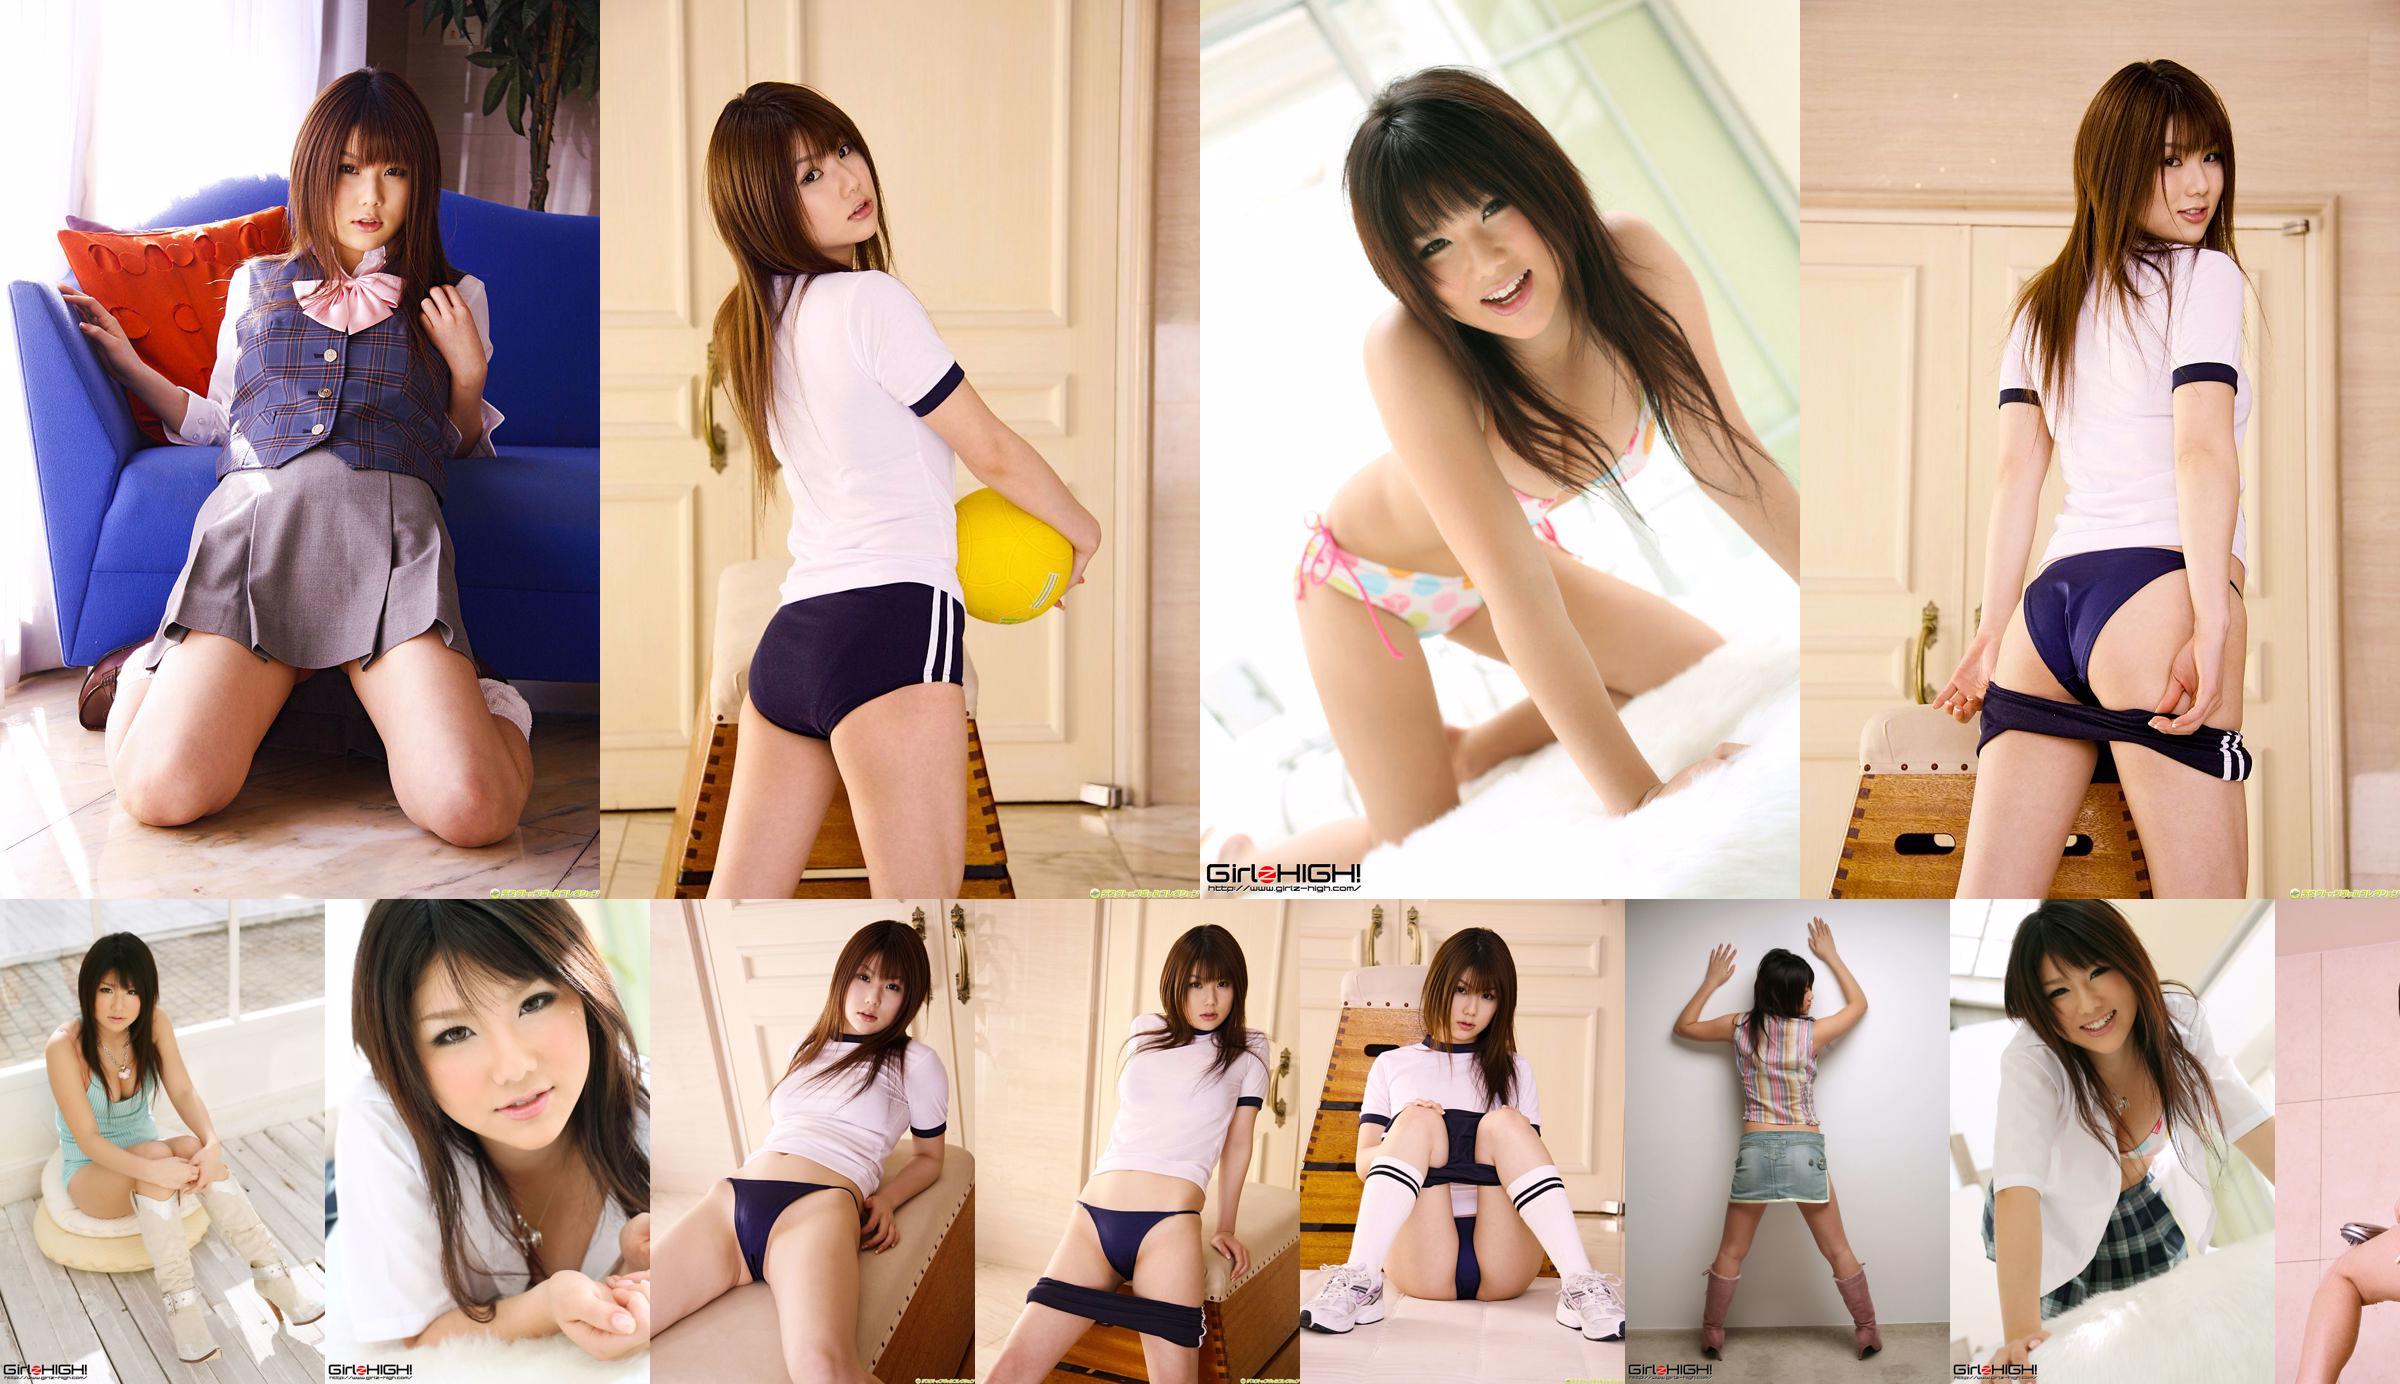 [DGC] Nr. 561 Yukina Momoyama Uniform schönes Mädchen Himmel No.bb68a0 Seite 1